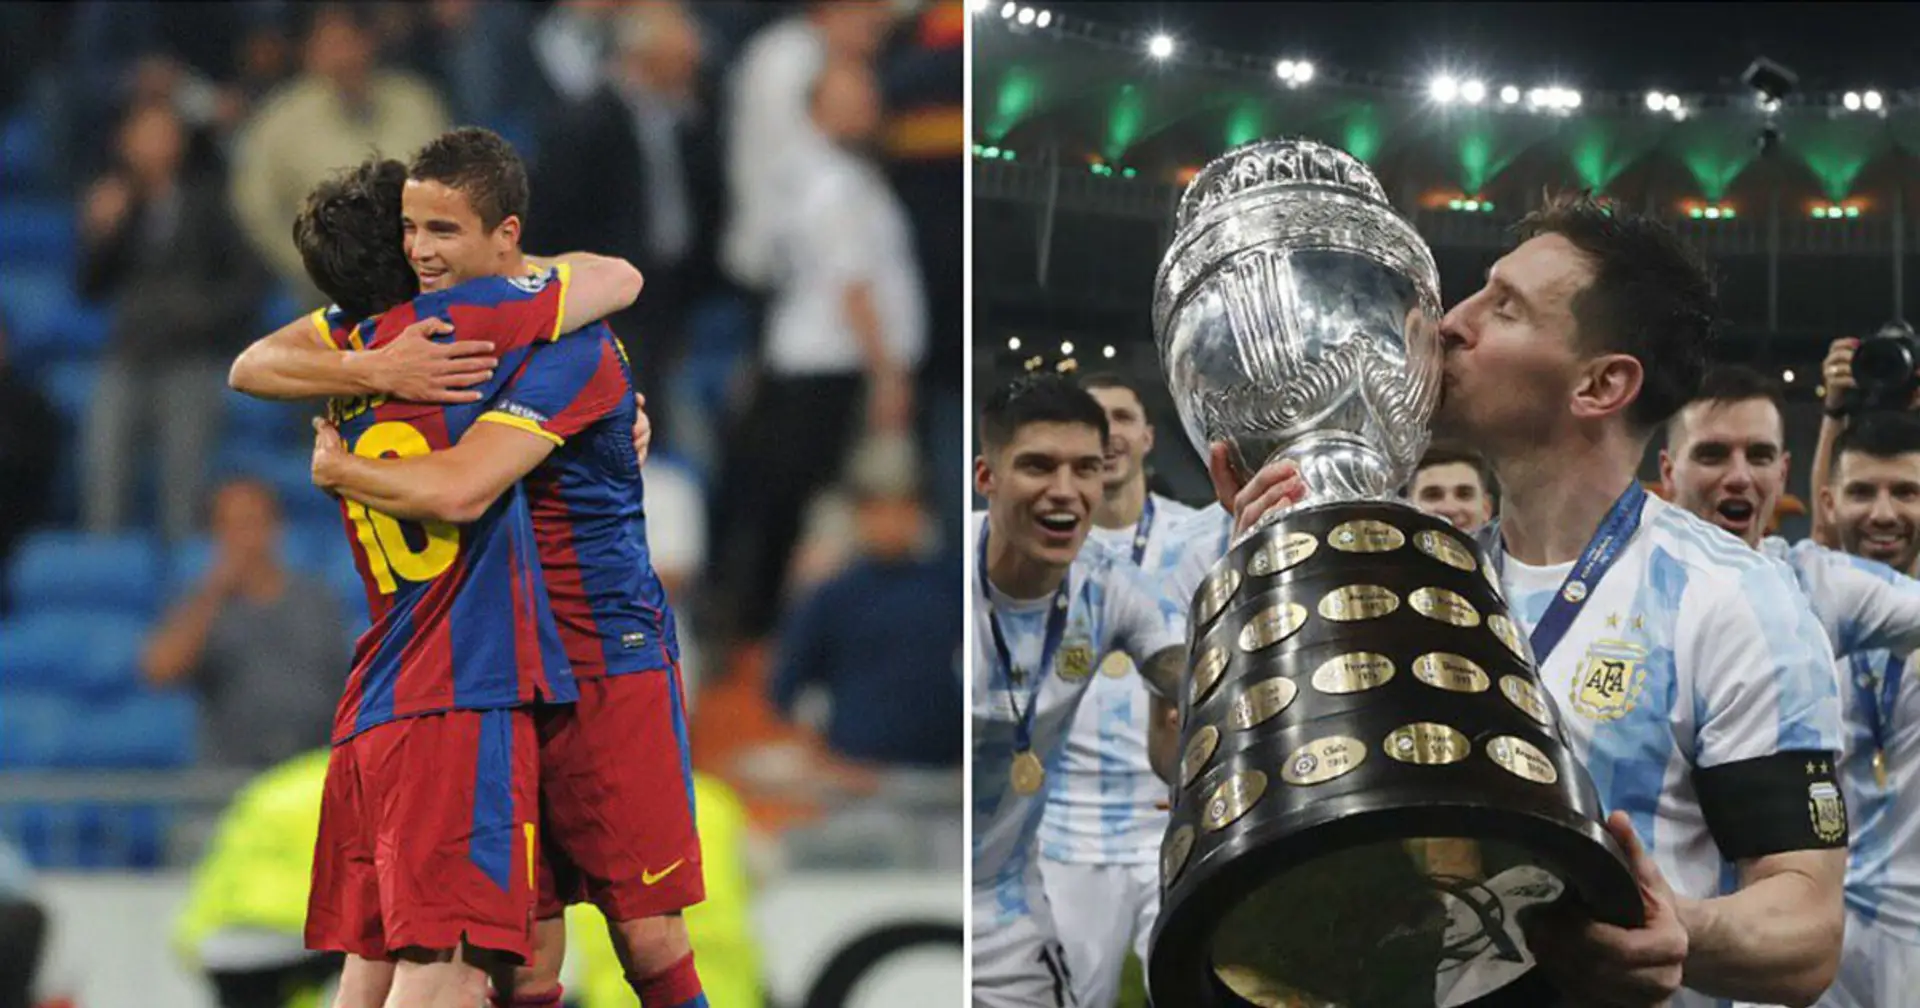 "Argentiniens Nationalmannschaft besteht zu 90% aus Messi": Ehemaliger Fußballer aus den Niederlanden beeindruckt von Leos Leistung bei der Weltmeisterschaft 